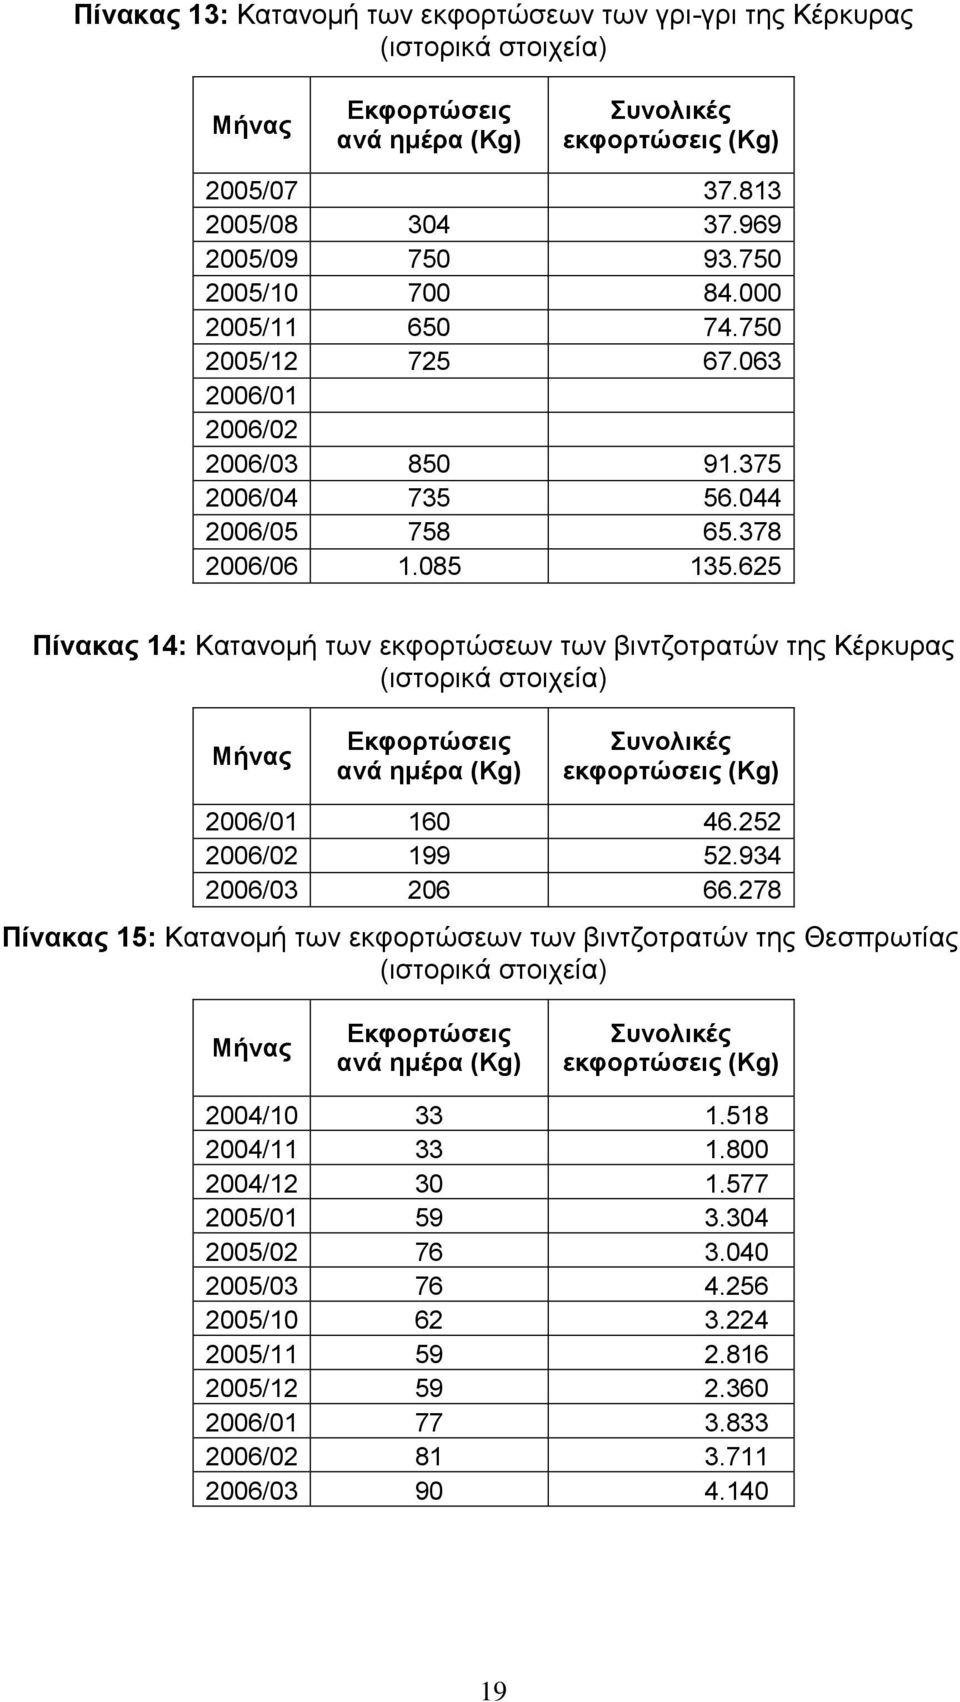 62 Πίνακας 14: Κατανομή των εκφορτώσεων των βιντζοτρατών της Κέρκυρας (ιστορικά στοιχεία) Μήνας Εκφορτώσεις ανά ημέρα (Kg) Συνολικές εκφορτώσεις (Kg) 26/1 16 46.22 26/2 199 2.934 26/3 26 66.